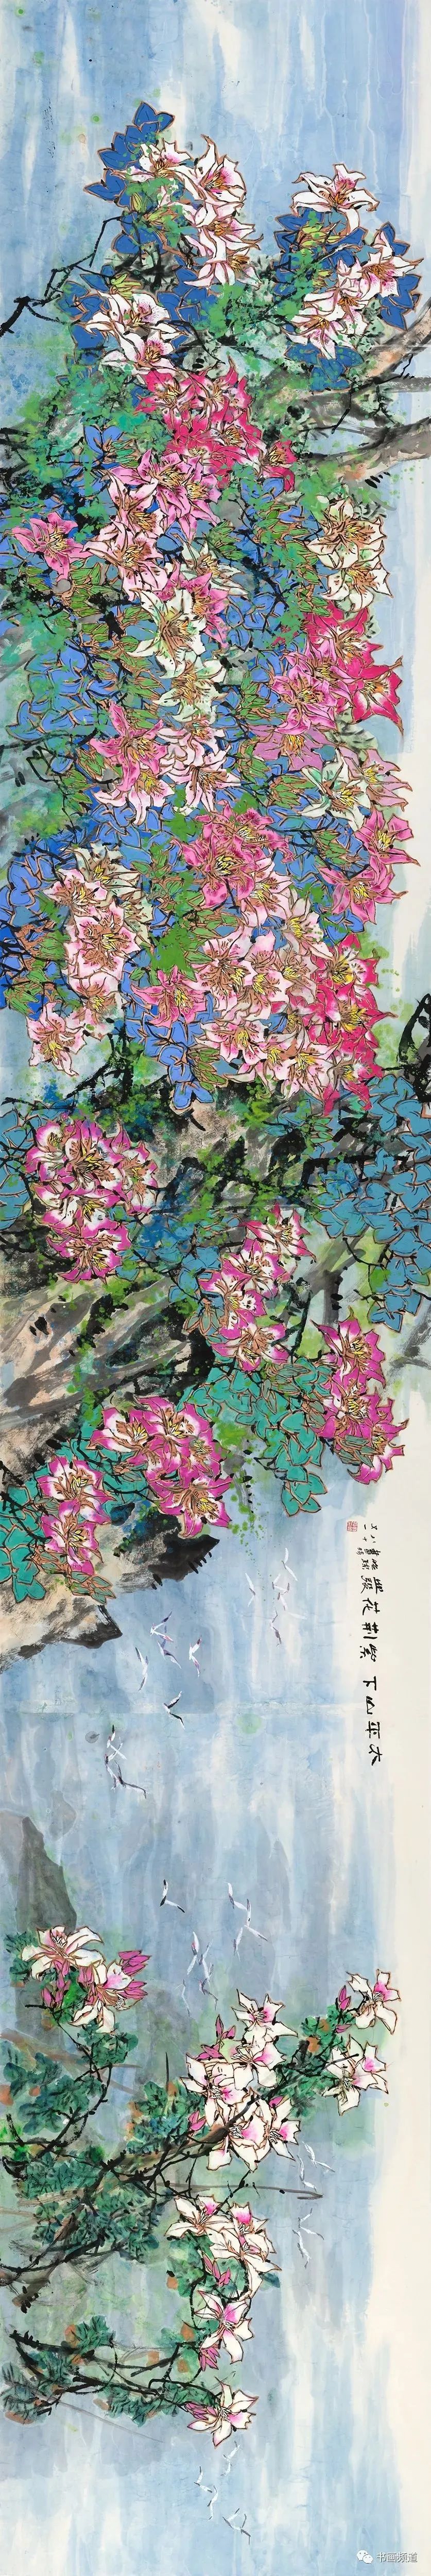 著名画家郭怡孮创作《太平山下  紫荆花发》贺香港回归25周年，并追忆当年回归画展盛况